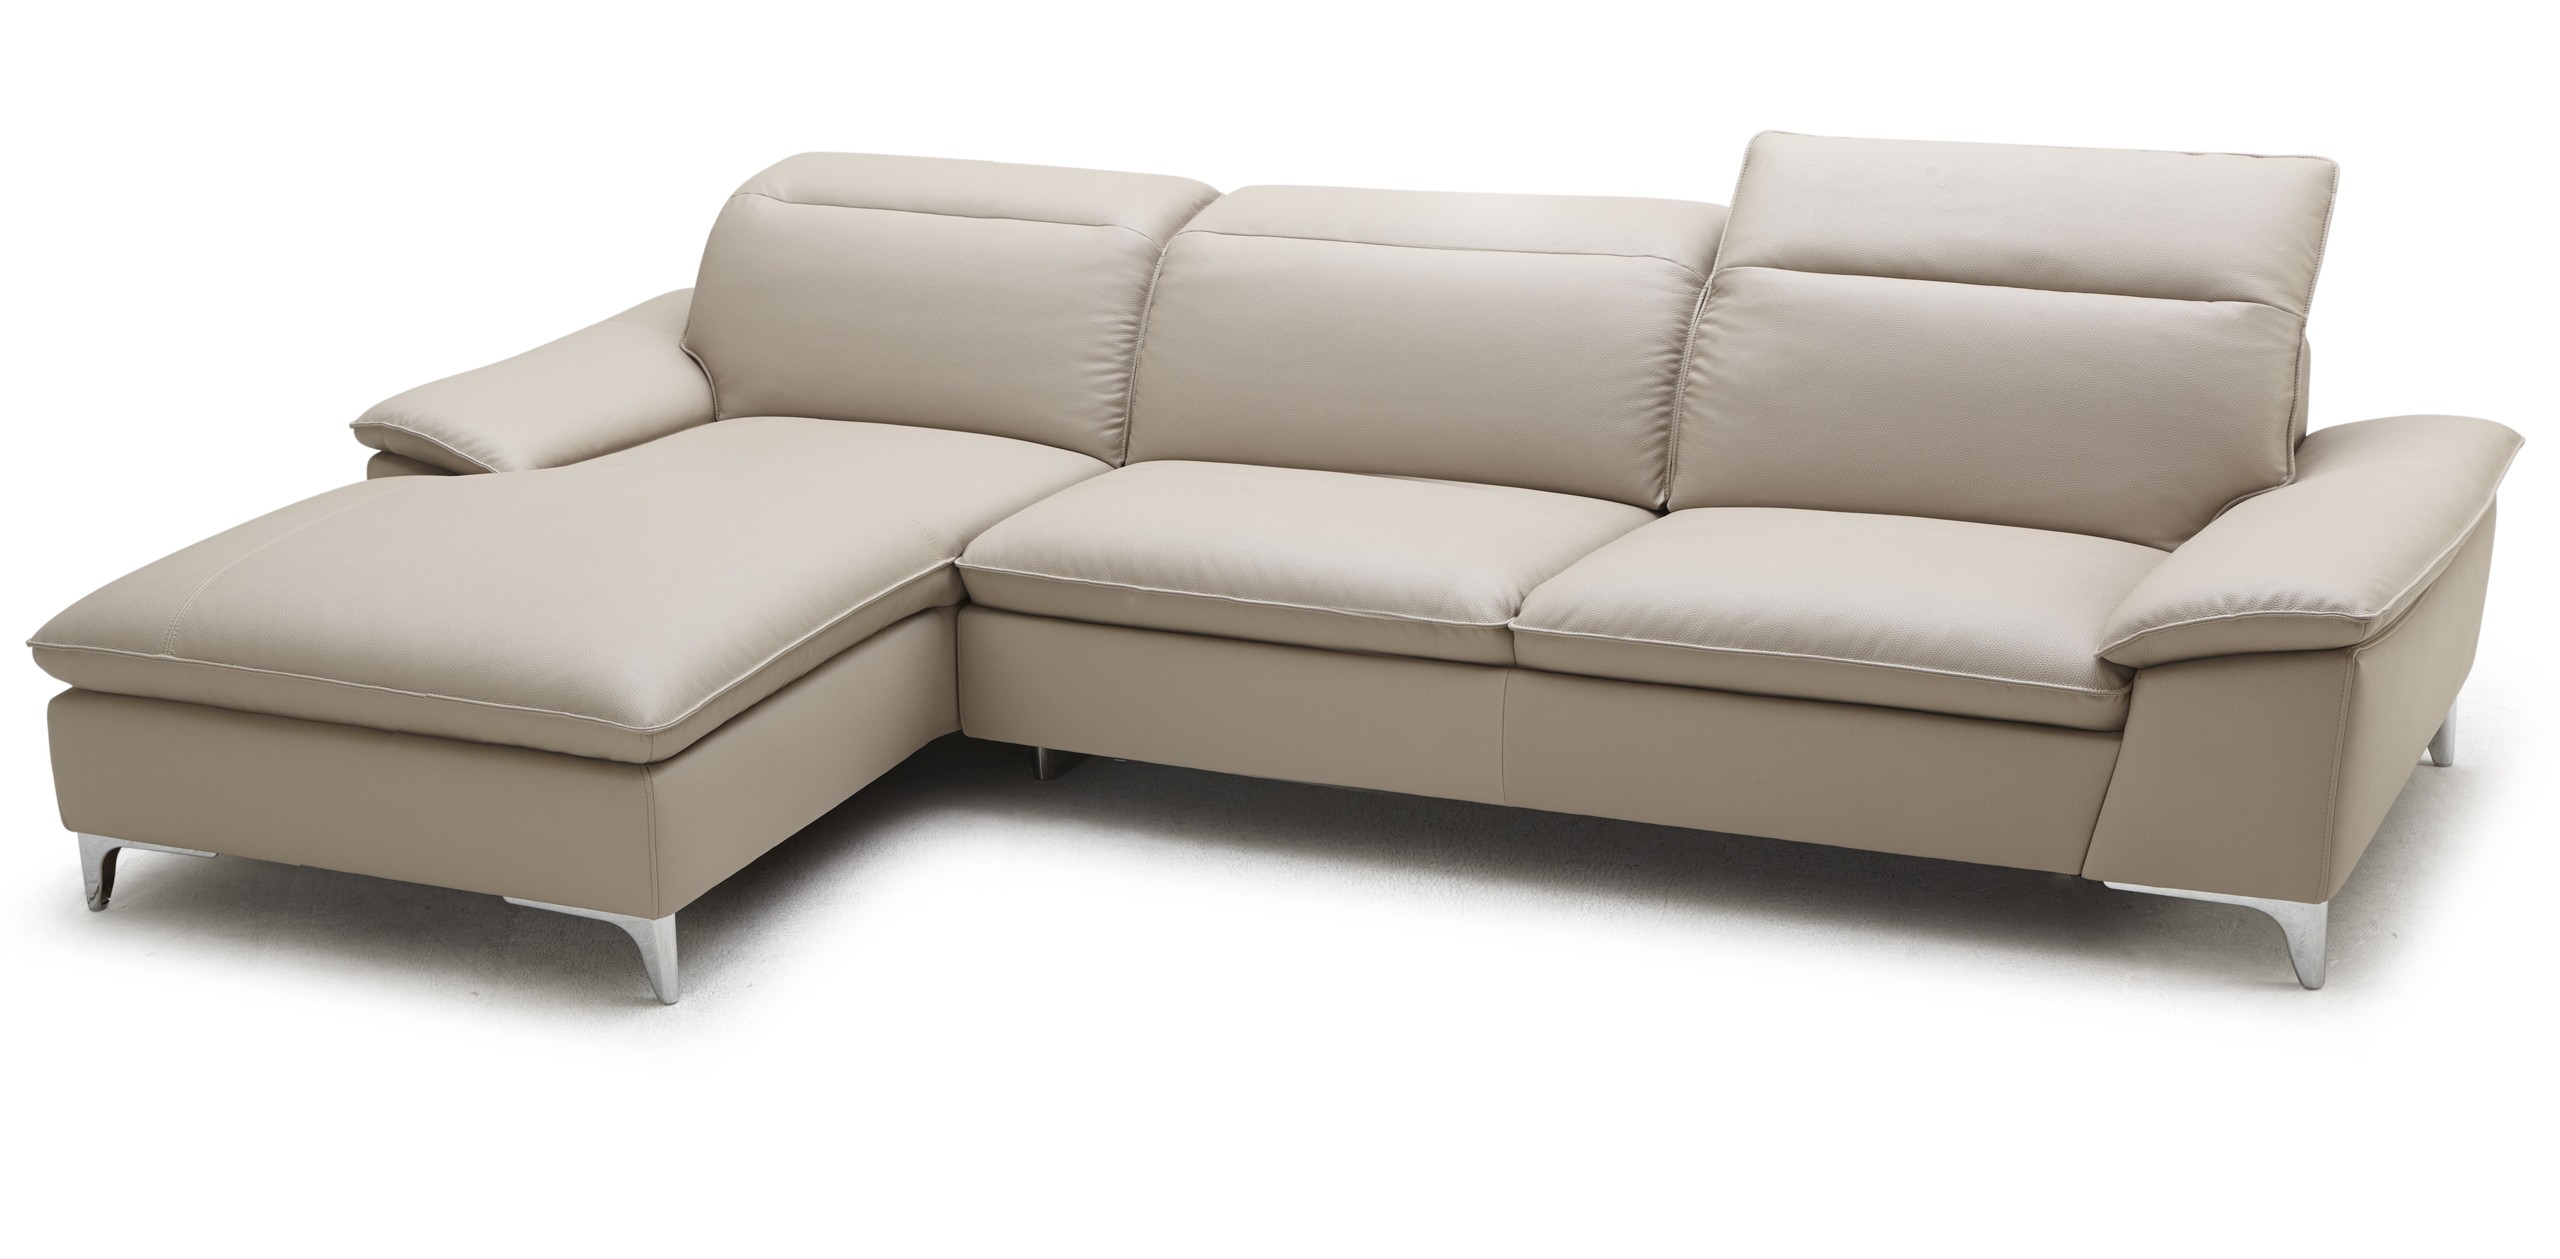 Taupe leather sofa 4